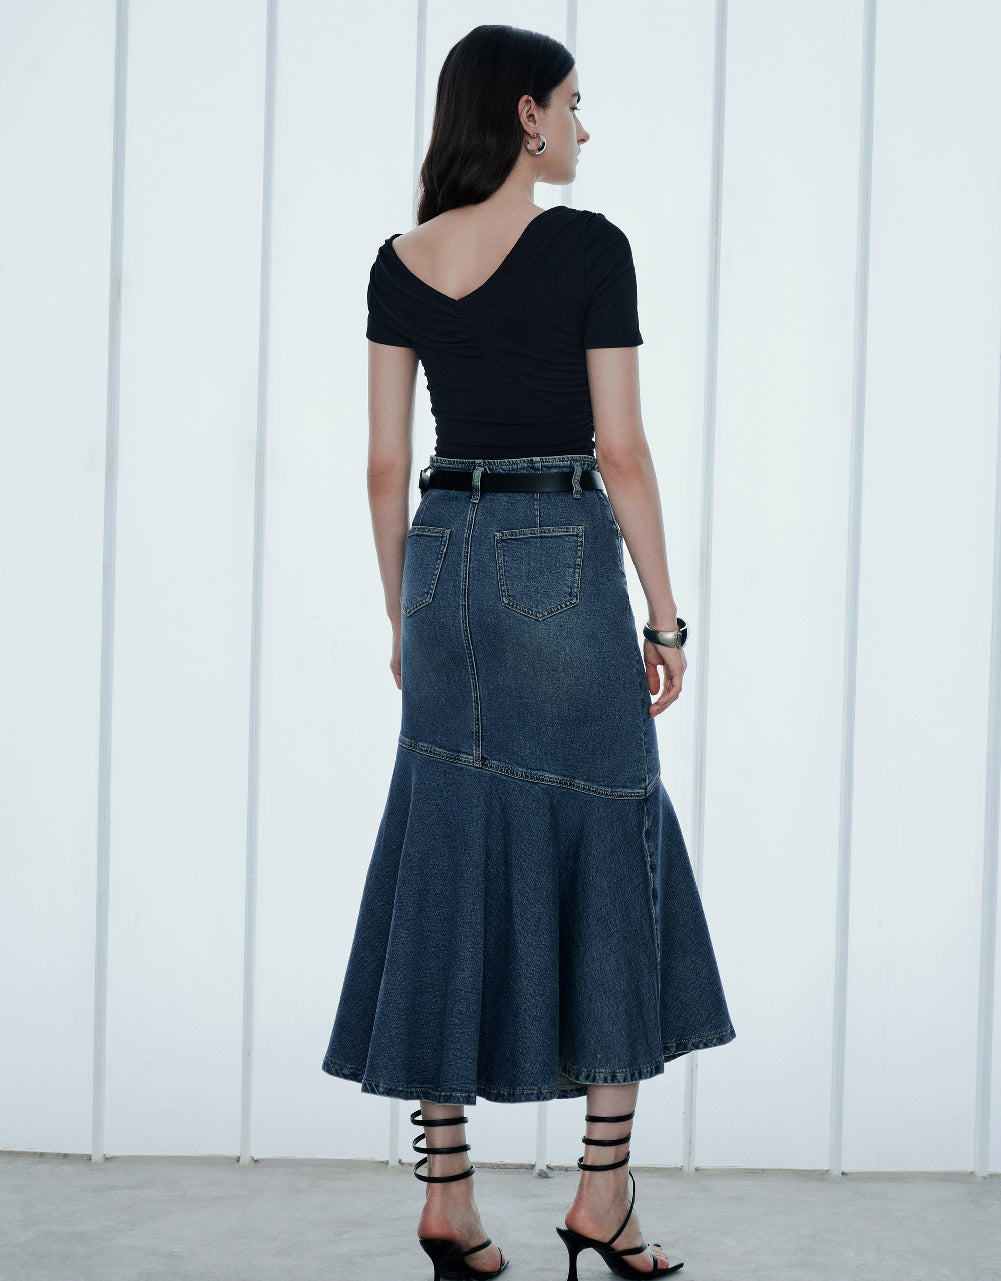 Denim Fishtail Skirt With Belt